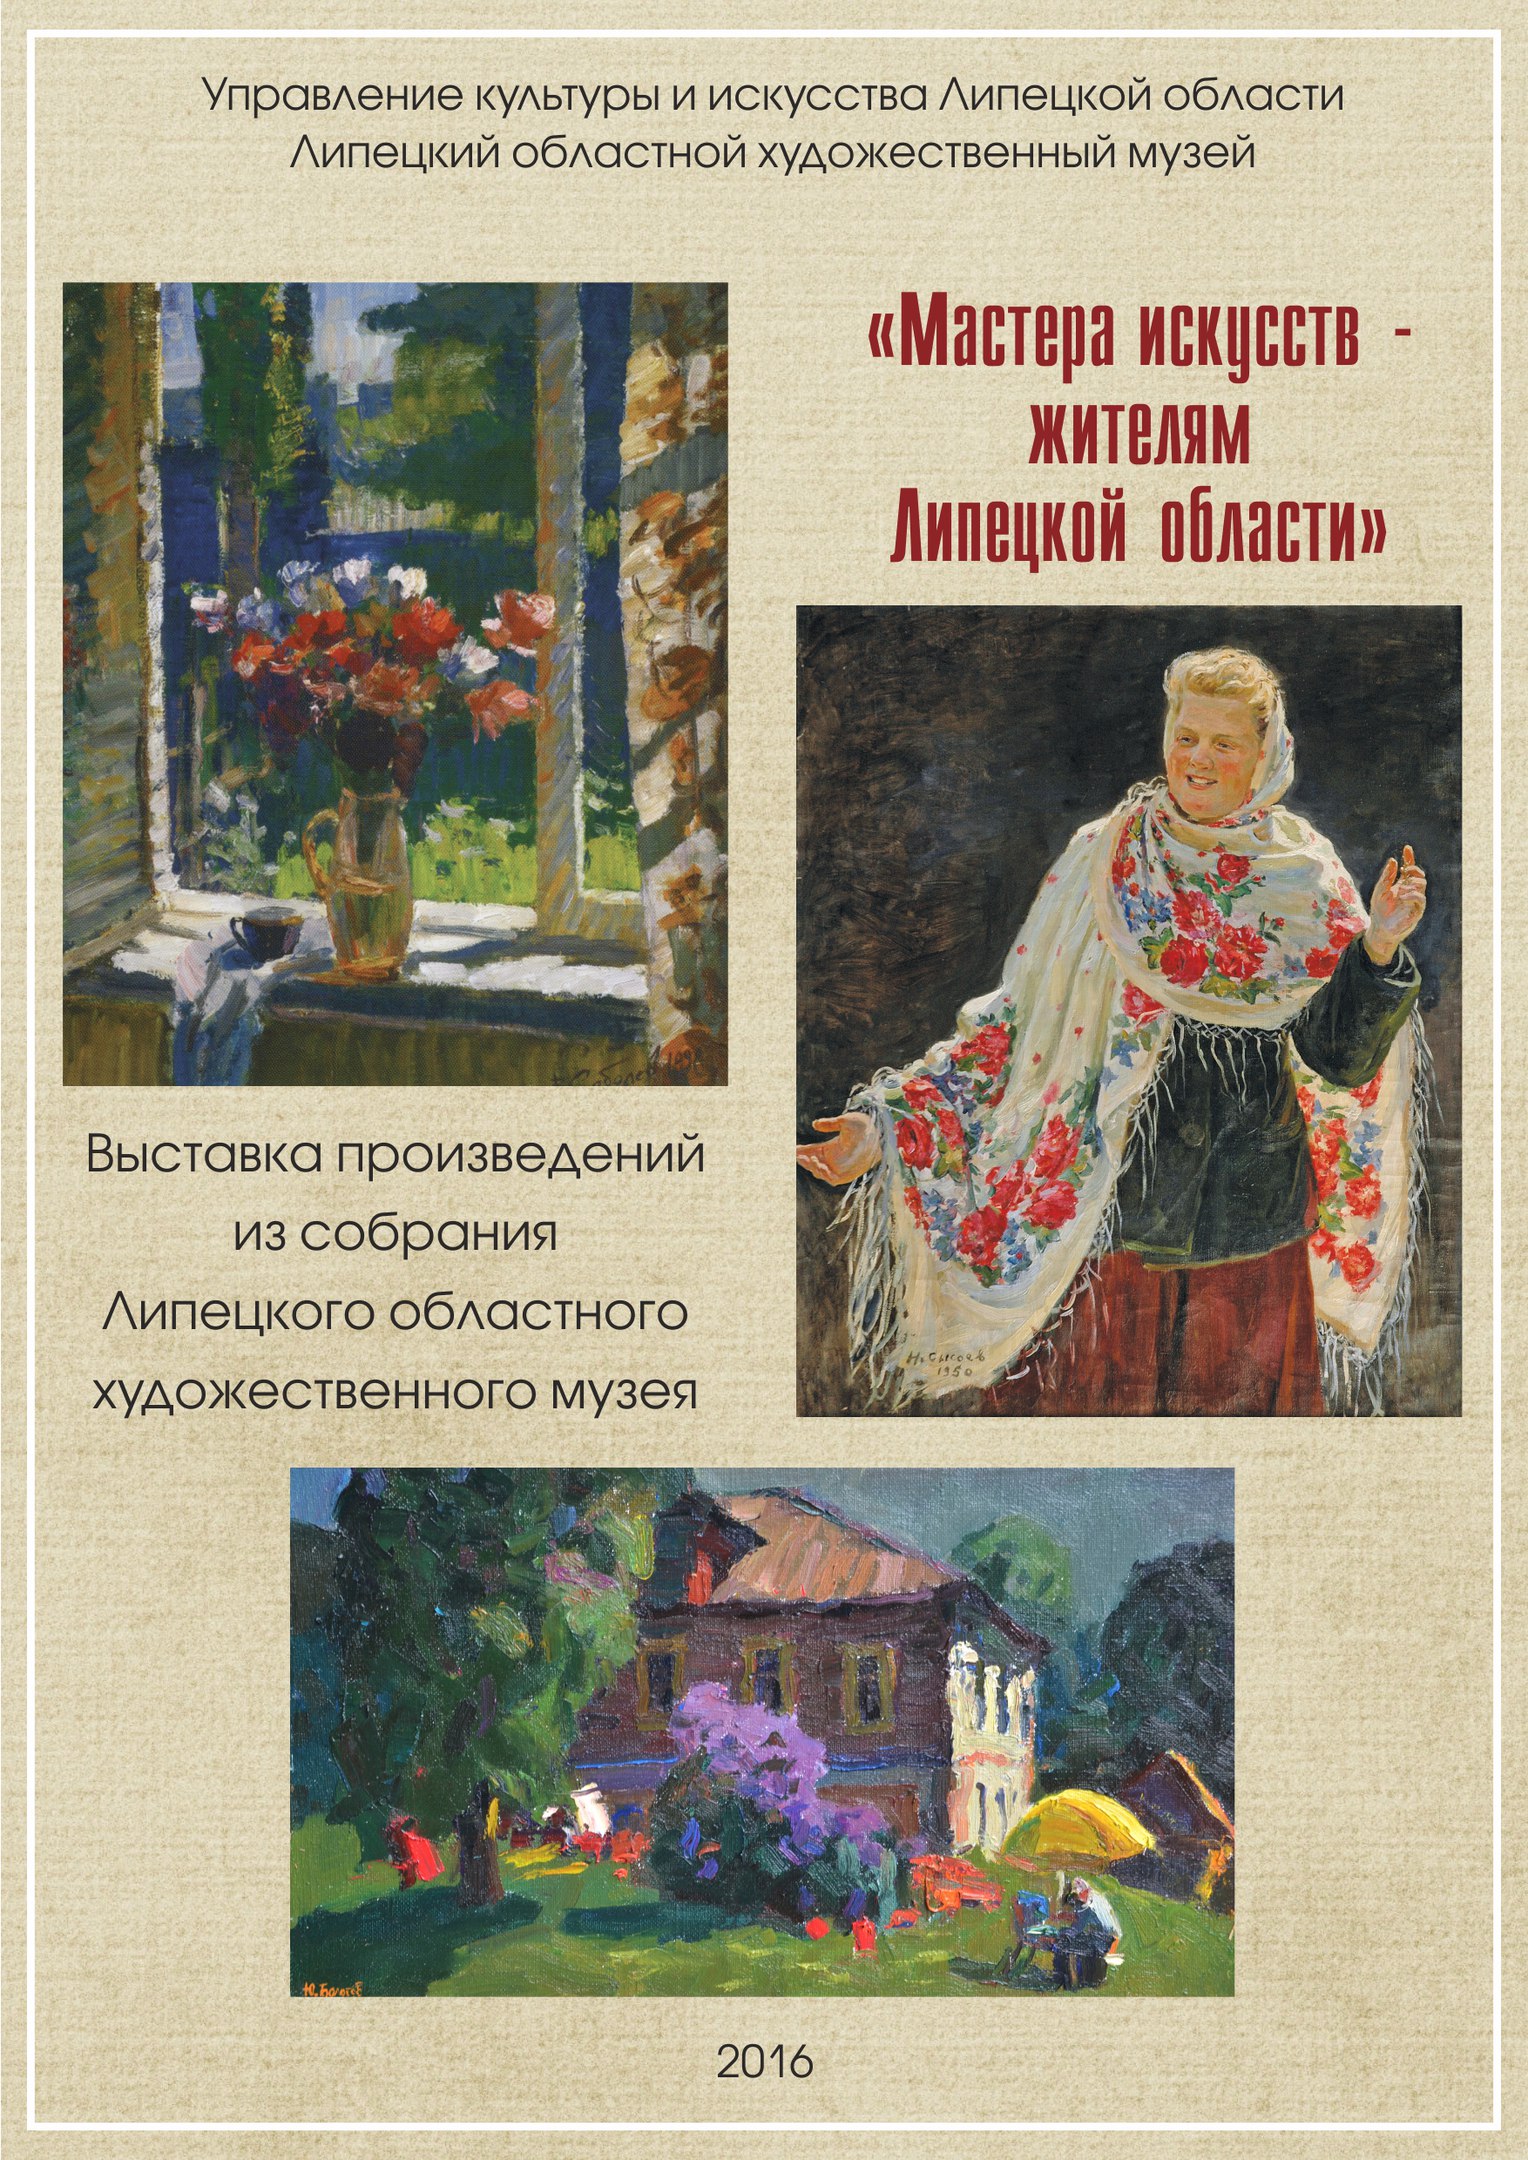 В городе Грязи открылась выставка живописи от Липецкого областного художественного музея